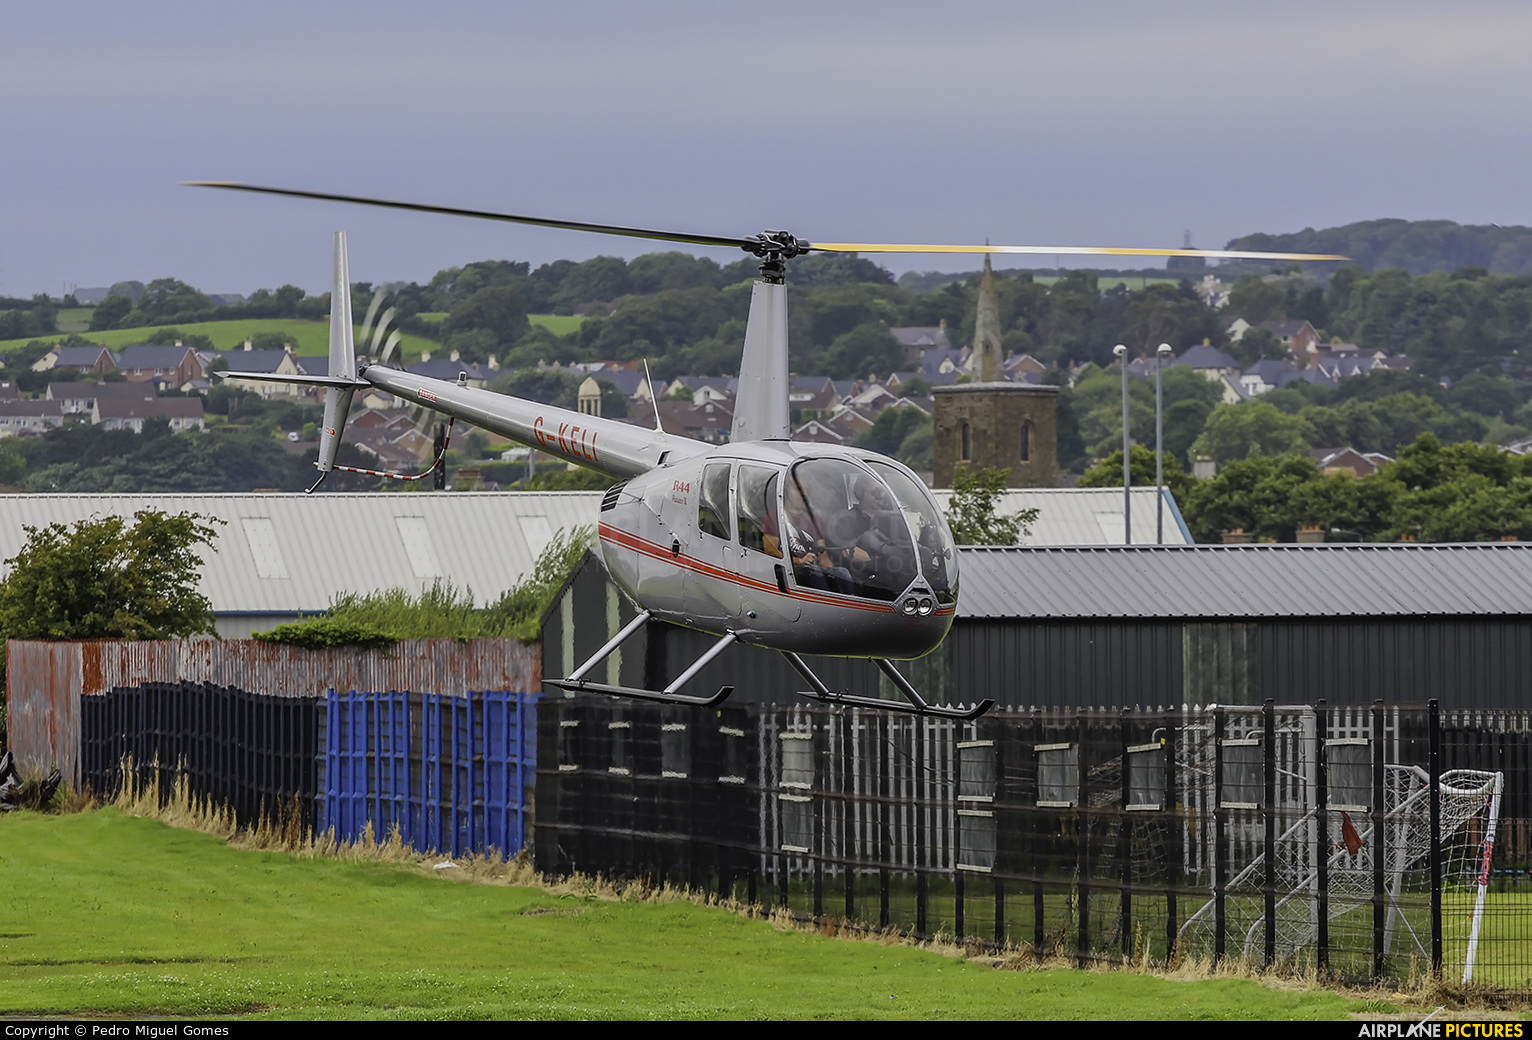  G-KELI aircraft at Newtownards